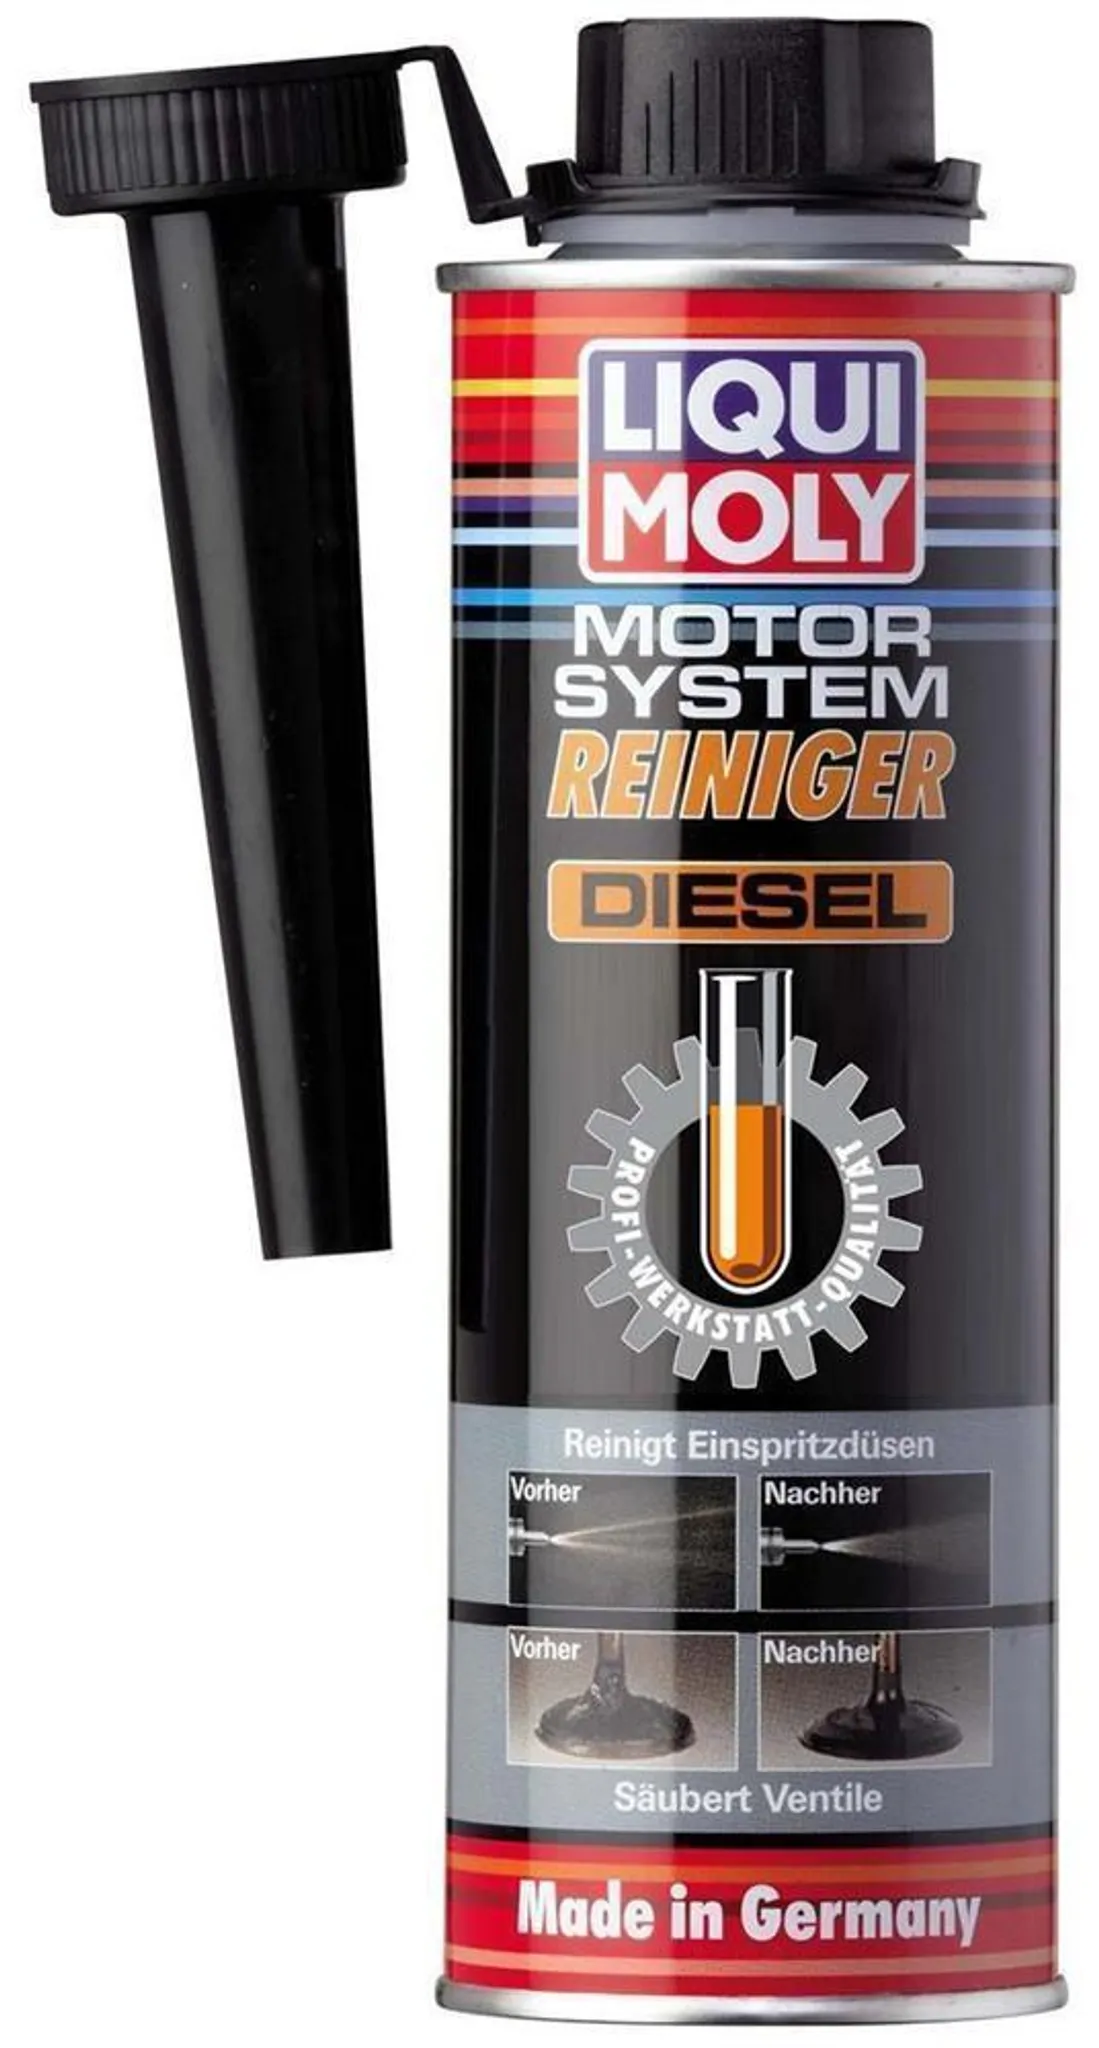 Liqui Moly Original Super Diesel Additiv 5L Dieselzusatz Dieselreiniger  Zusatz